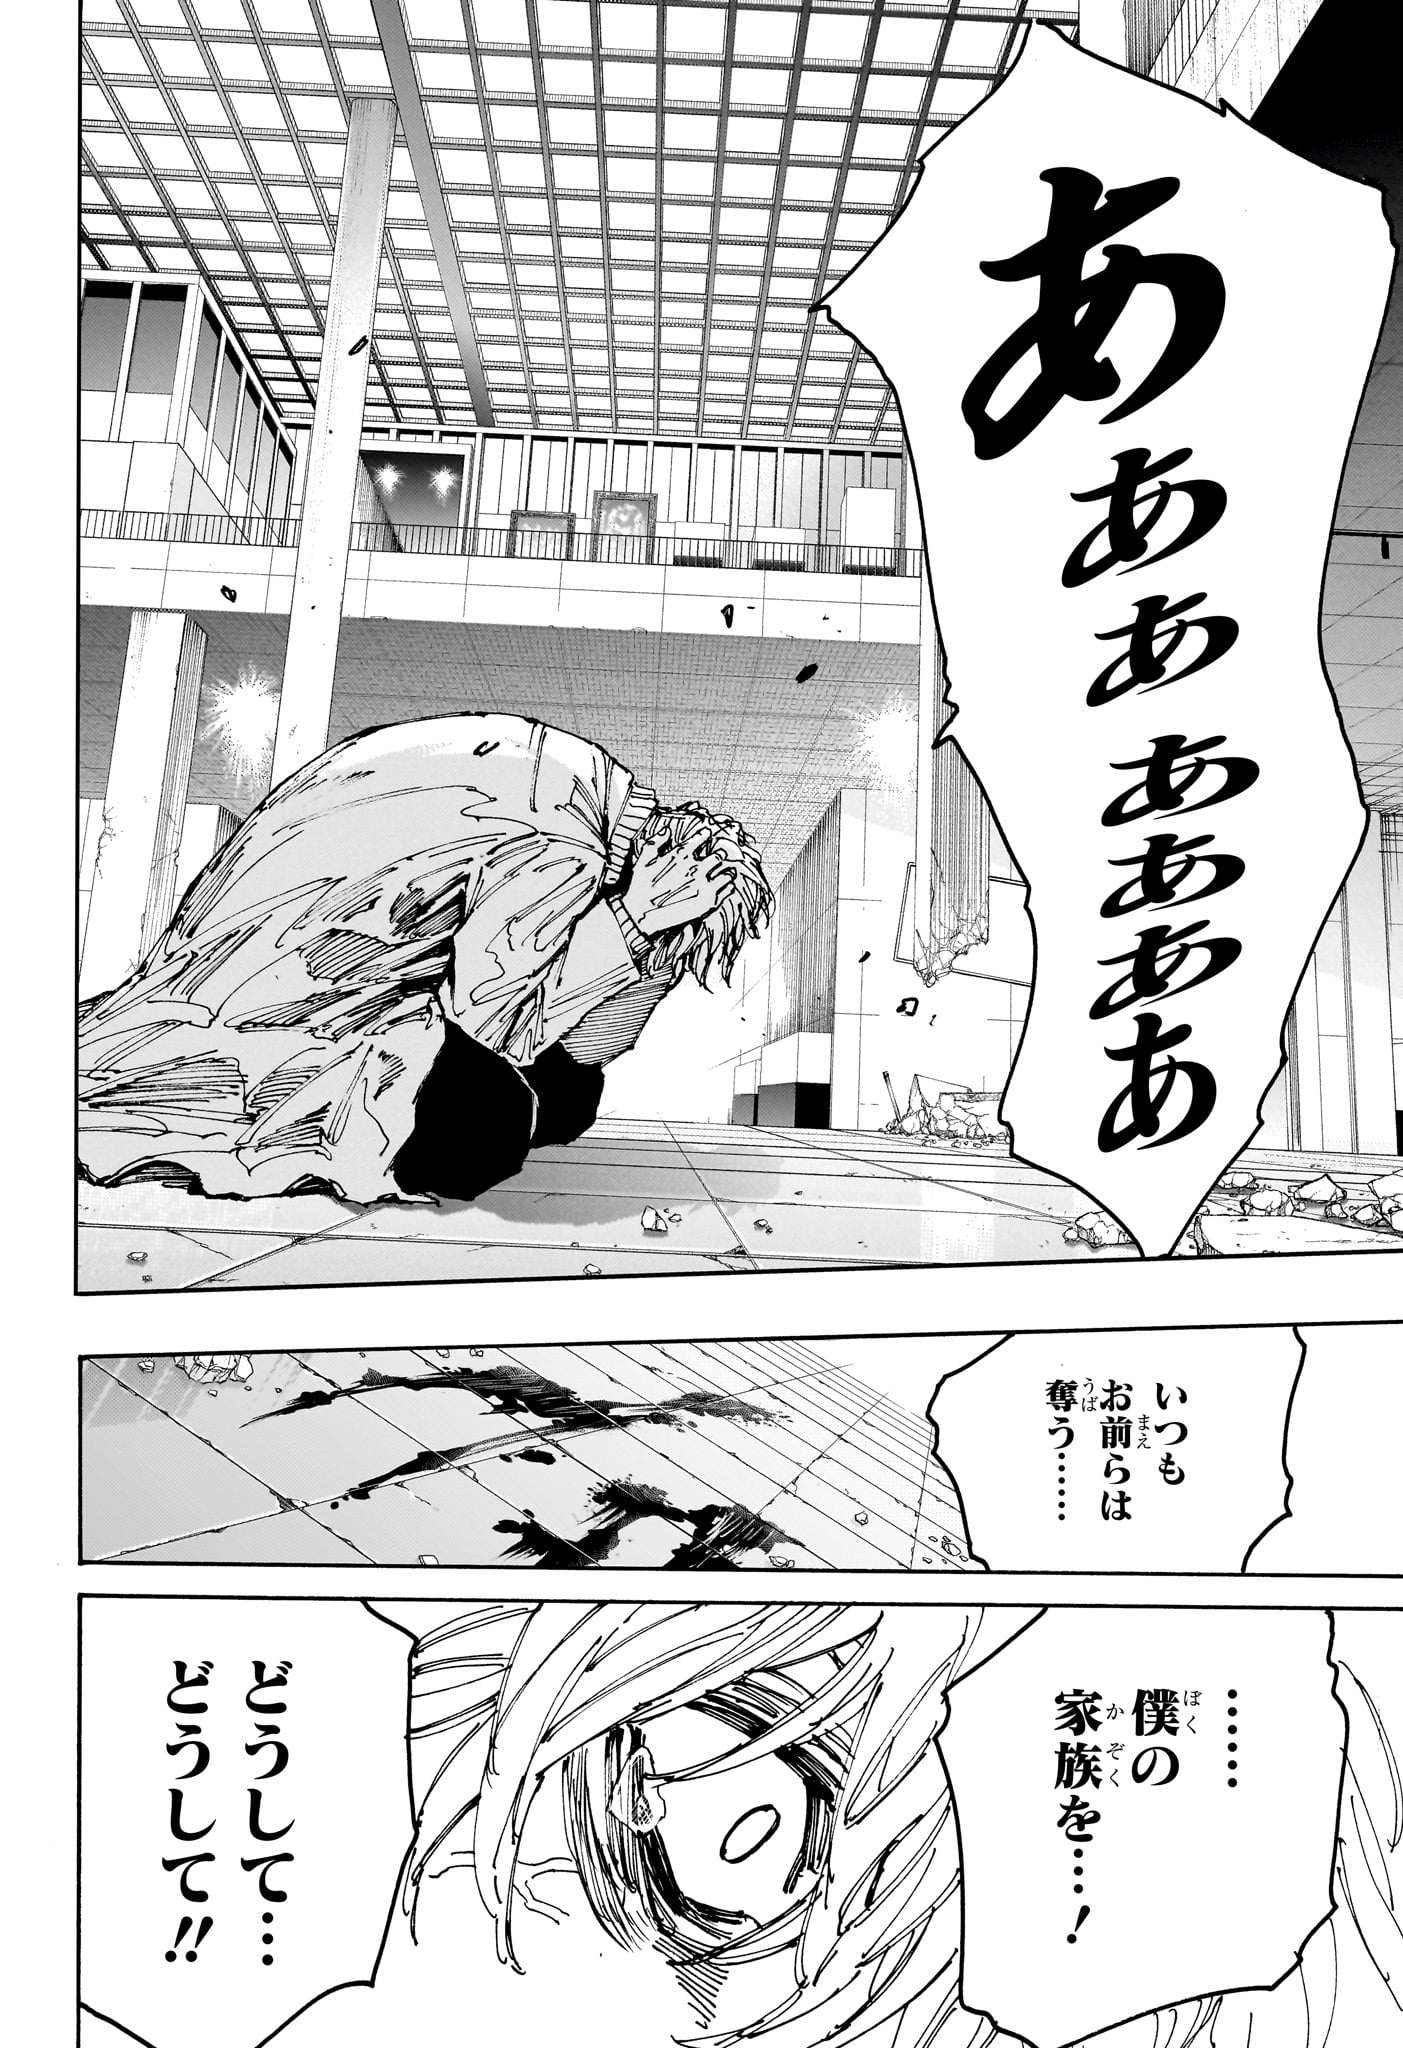 Sakamoto Days - Chapter 167 - Page 12